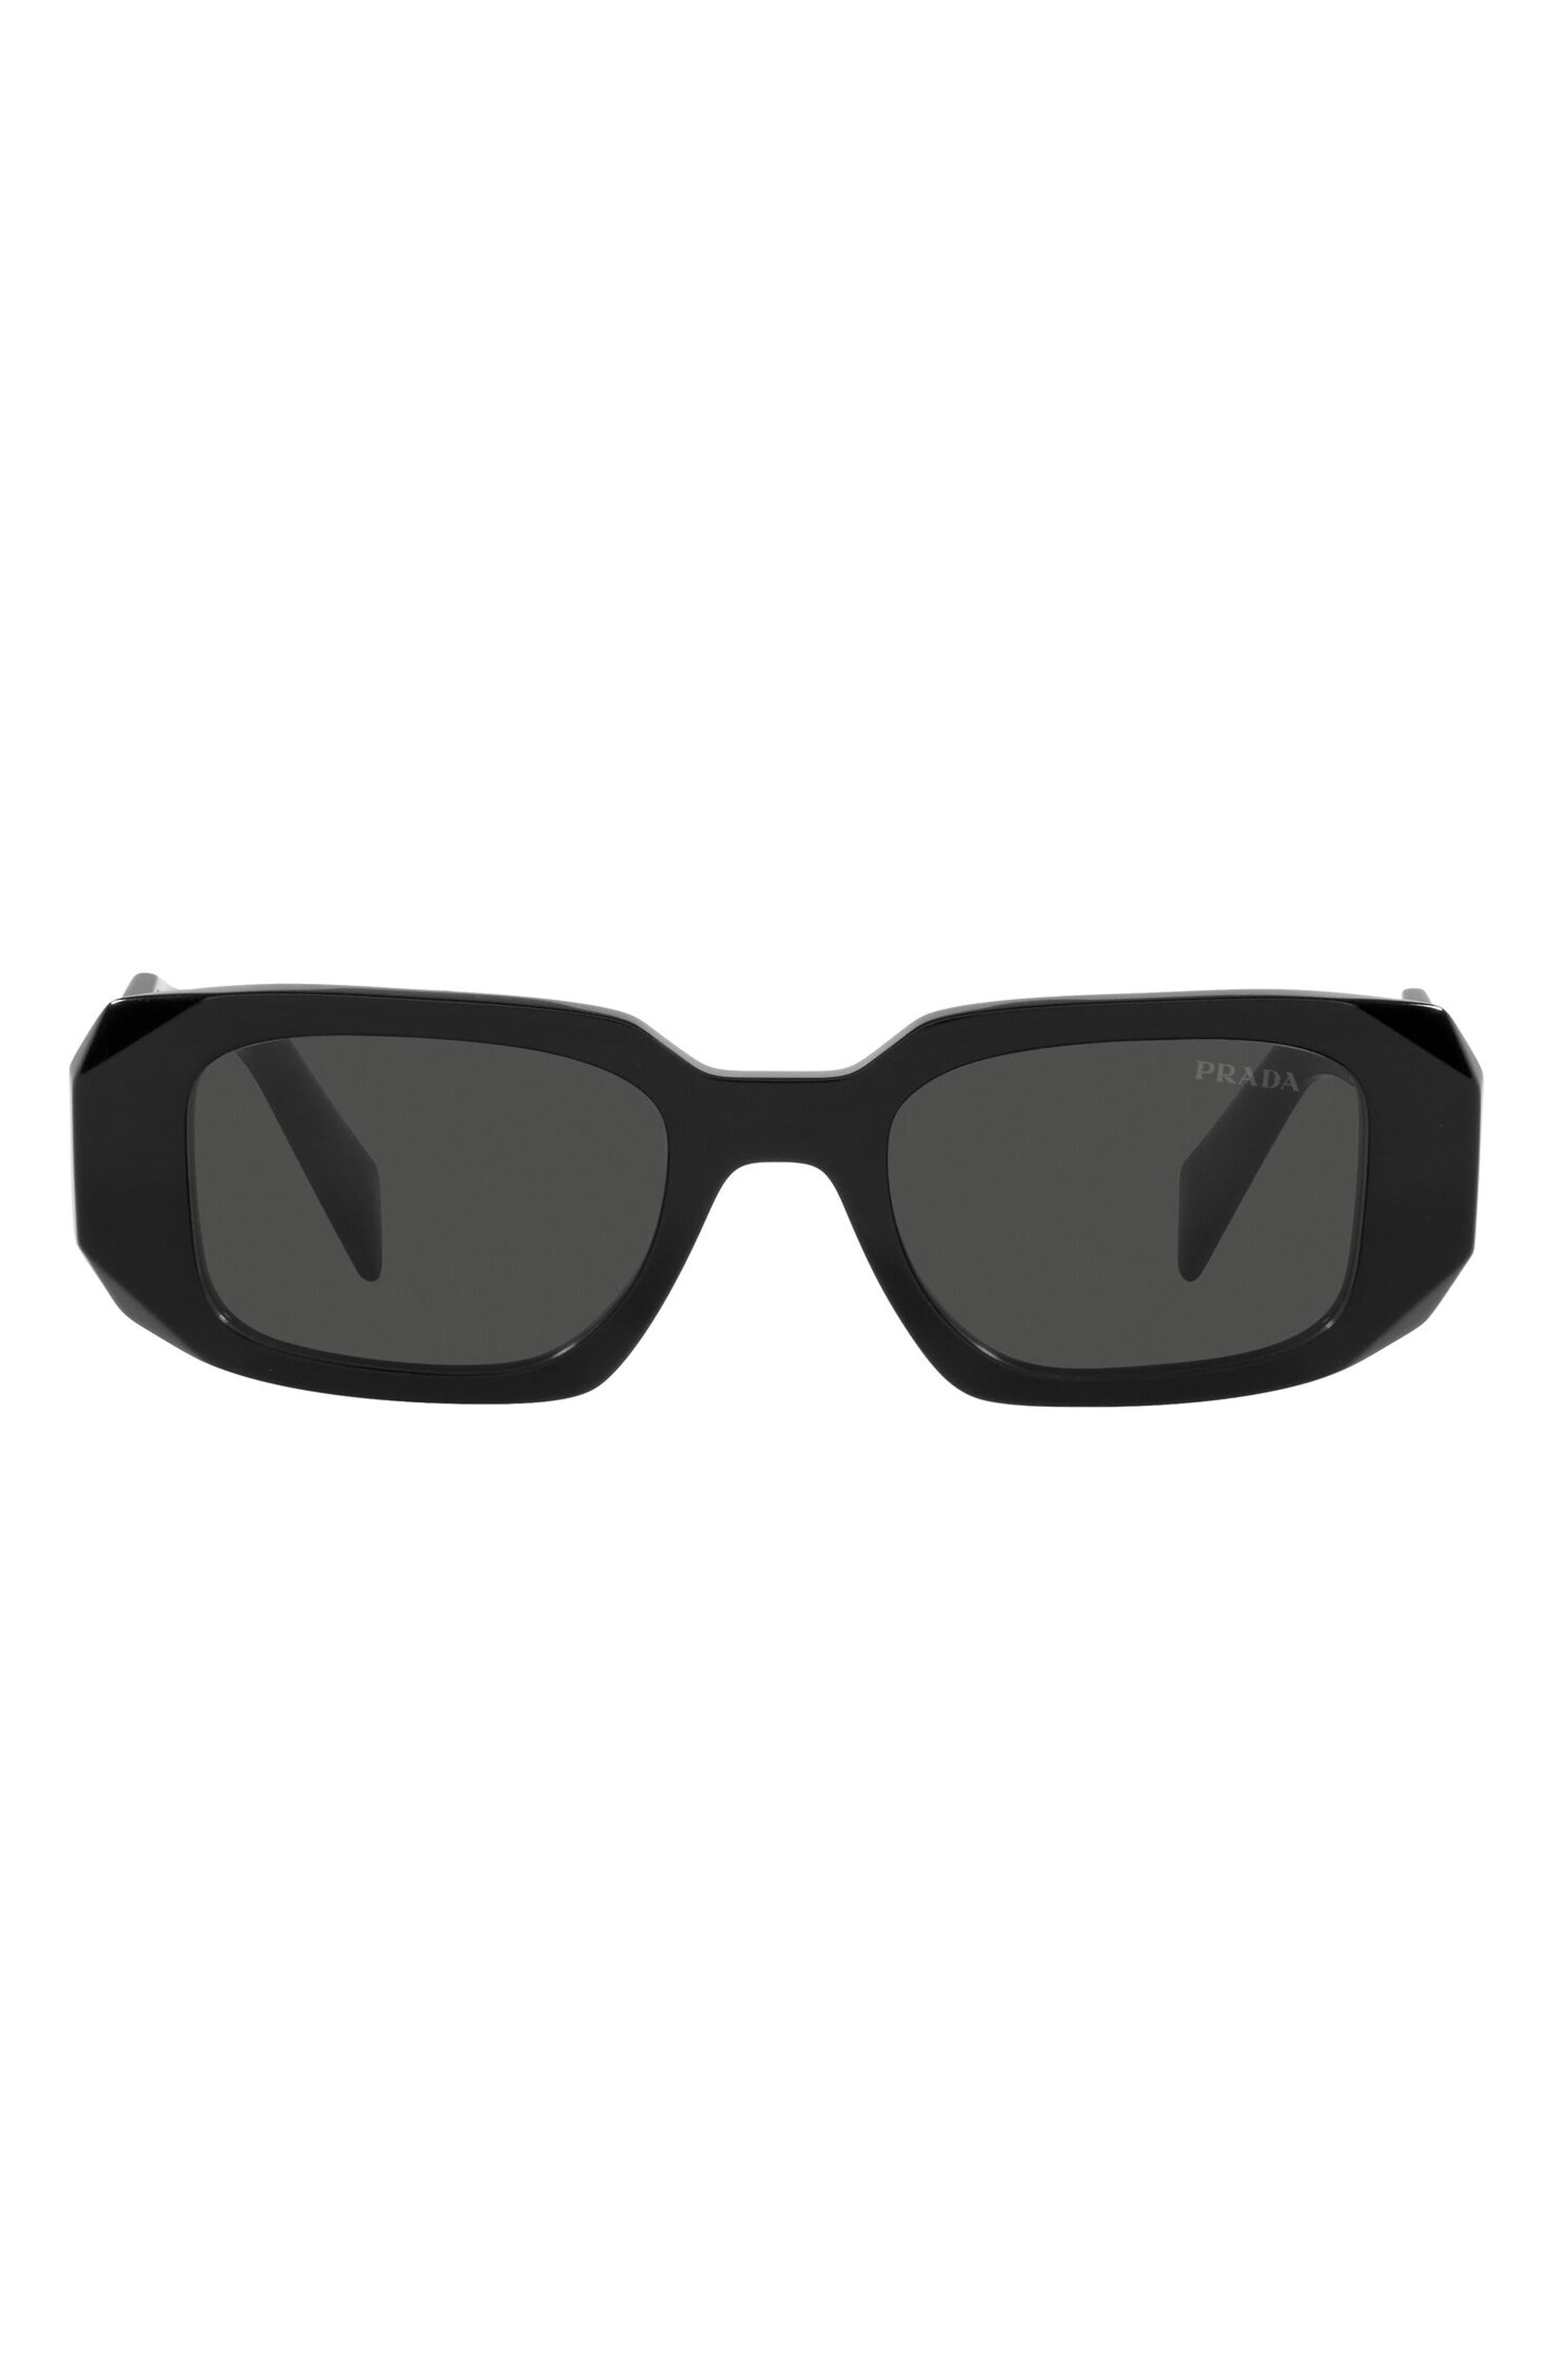 Prada Sunglasses Black |